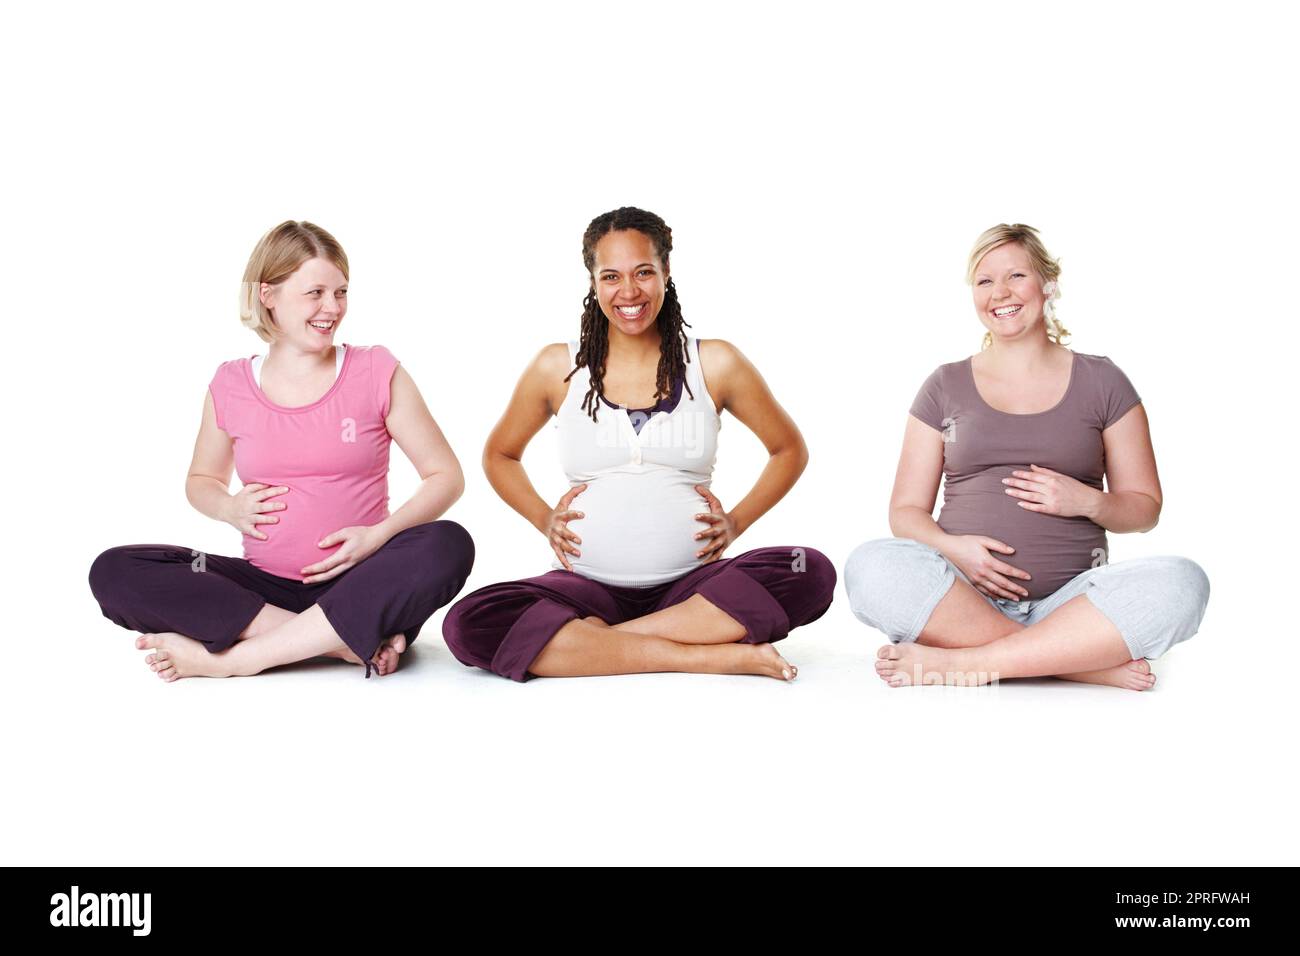 Femmes enceintes ou amis prêts pour le yoga, pilates ou cours de naissance pour l'aide, le soutien et la communauté ou le bien-être. Mère heureuse avec le sourire et l'espoir de croissance de la vie assis sur le sol avec fond blanc Banque D'Images